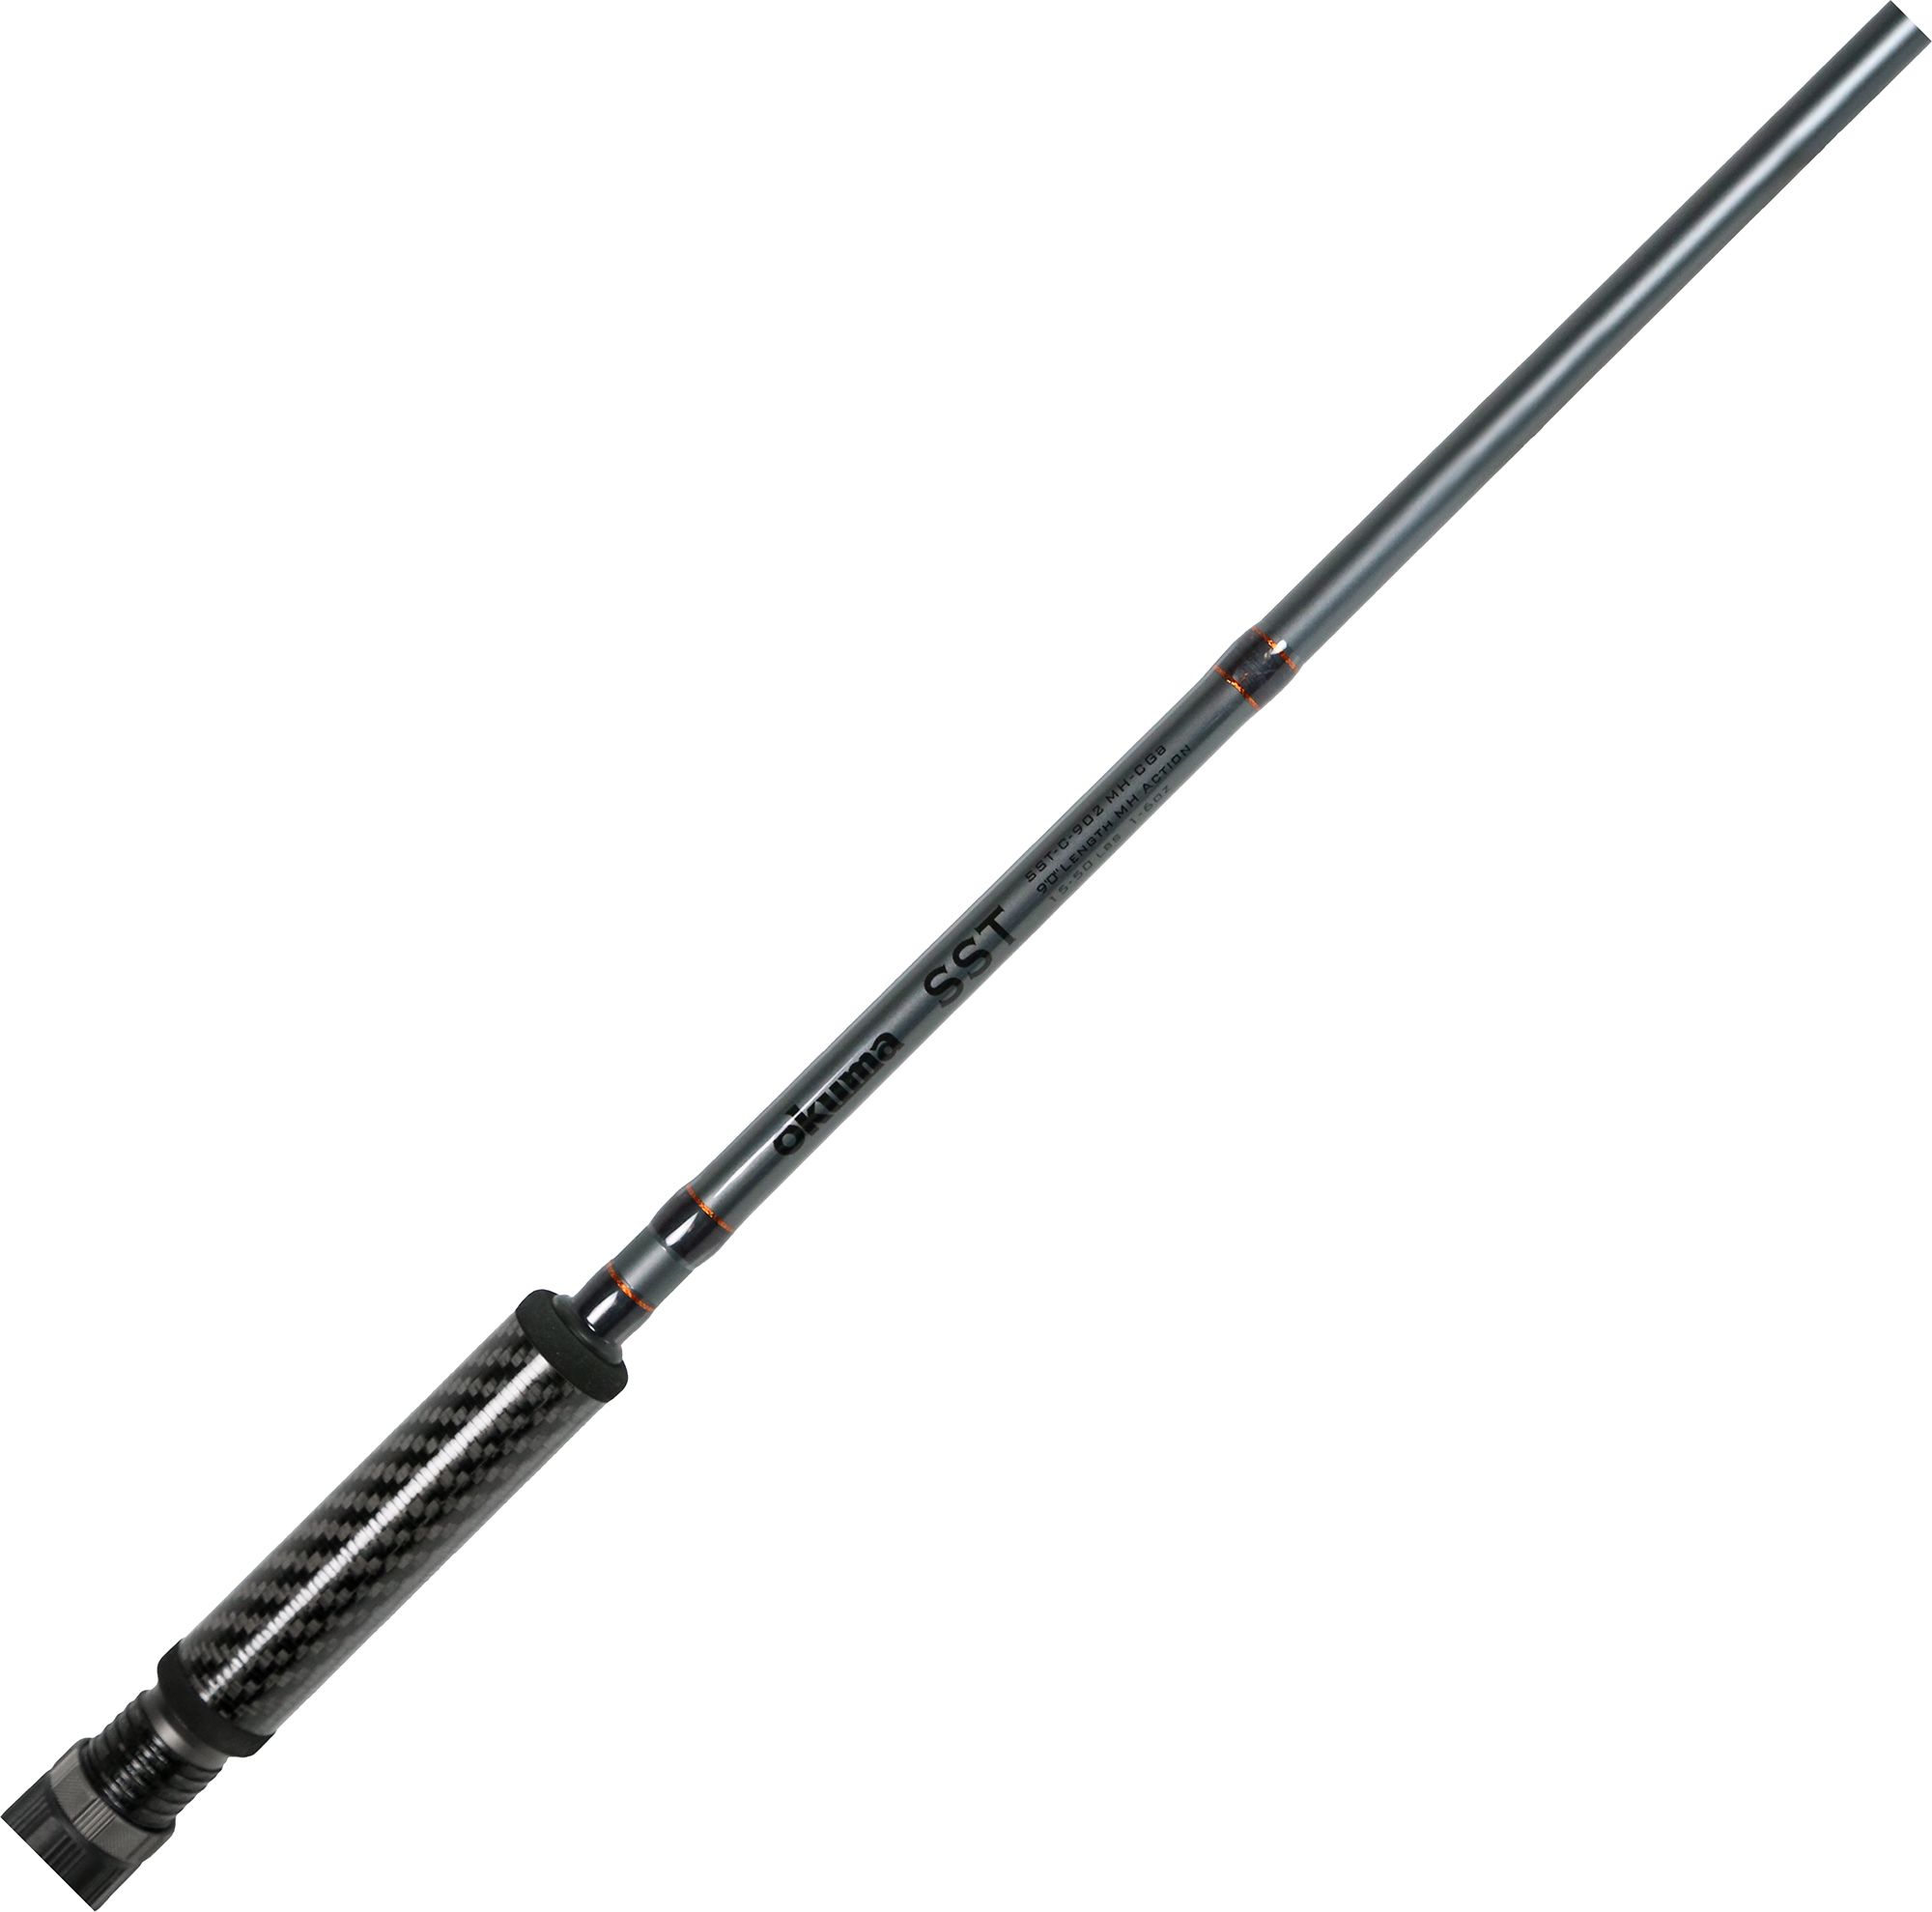 Okuma SST A Series Carbon Casting Rod